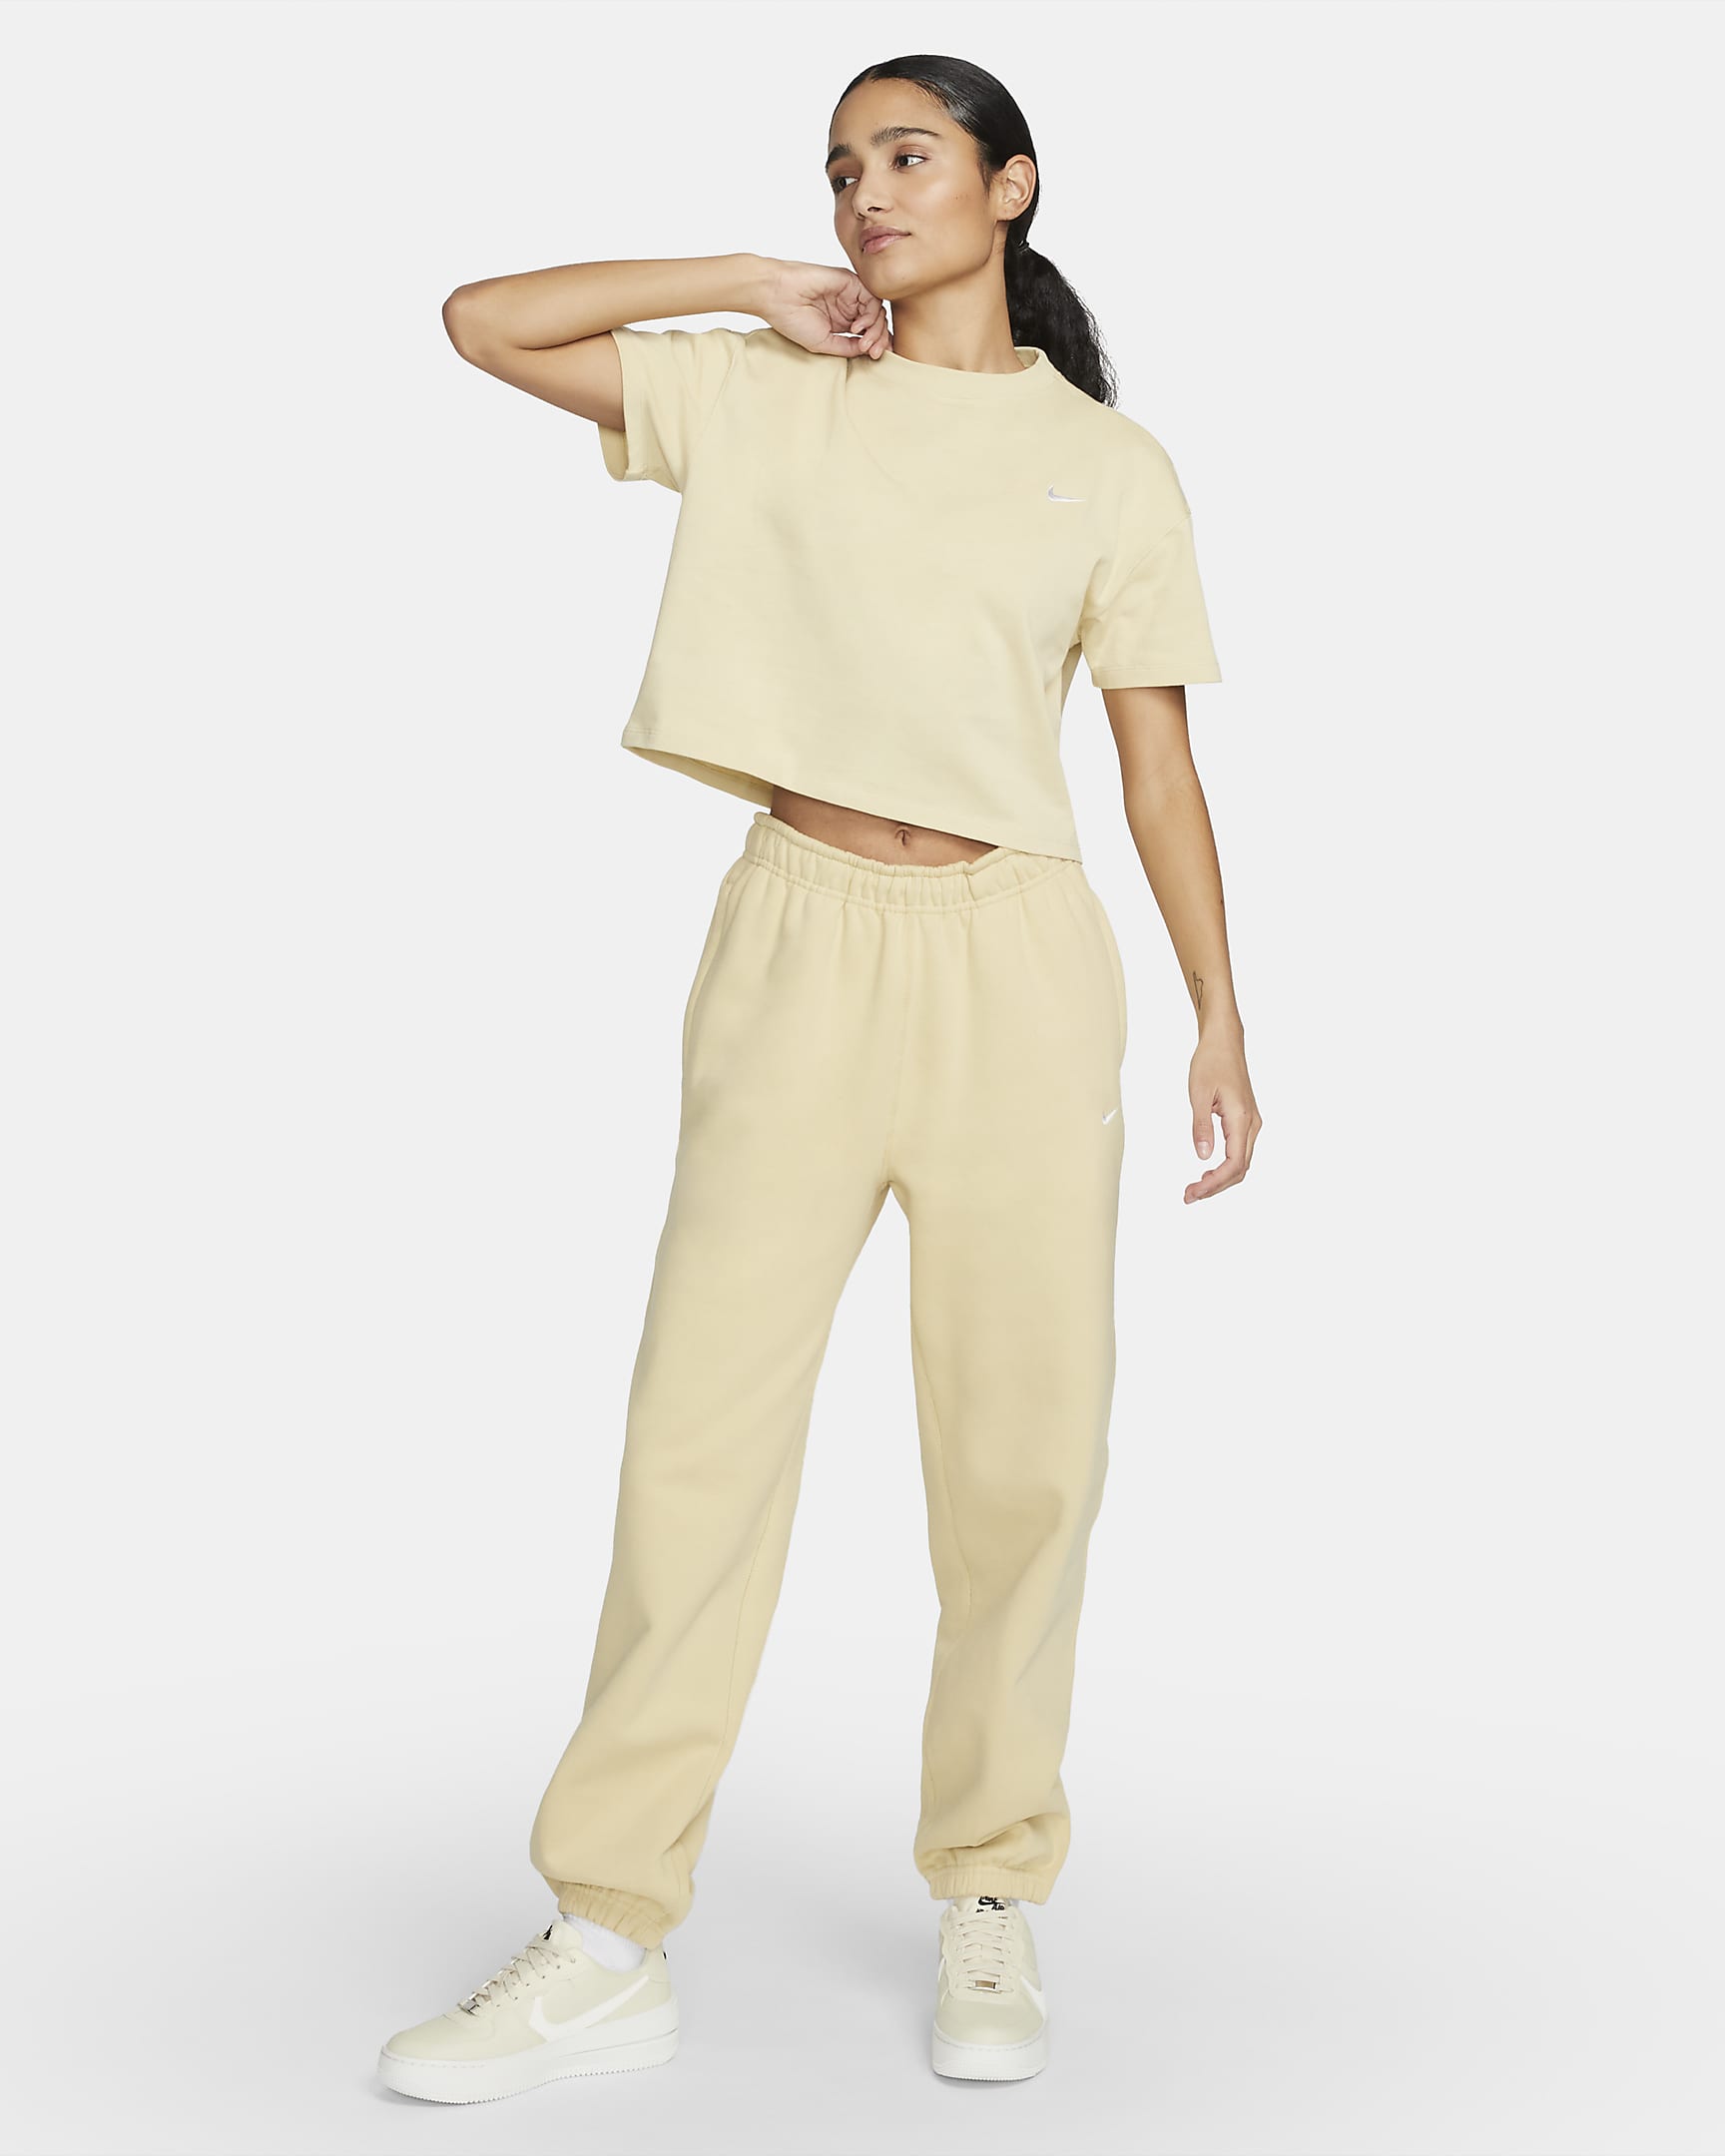 Nike Solo Swoosh Women's Fleece Trousers - Team Gold/White